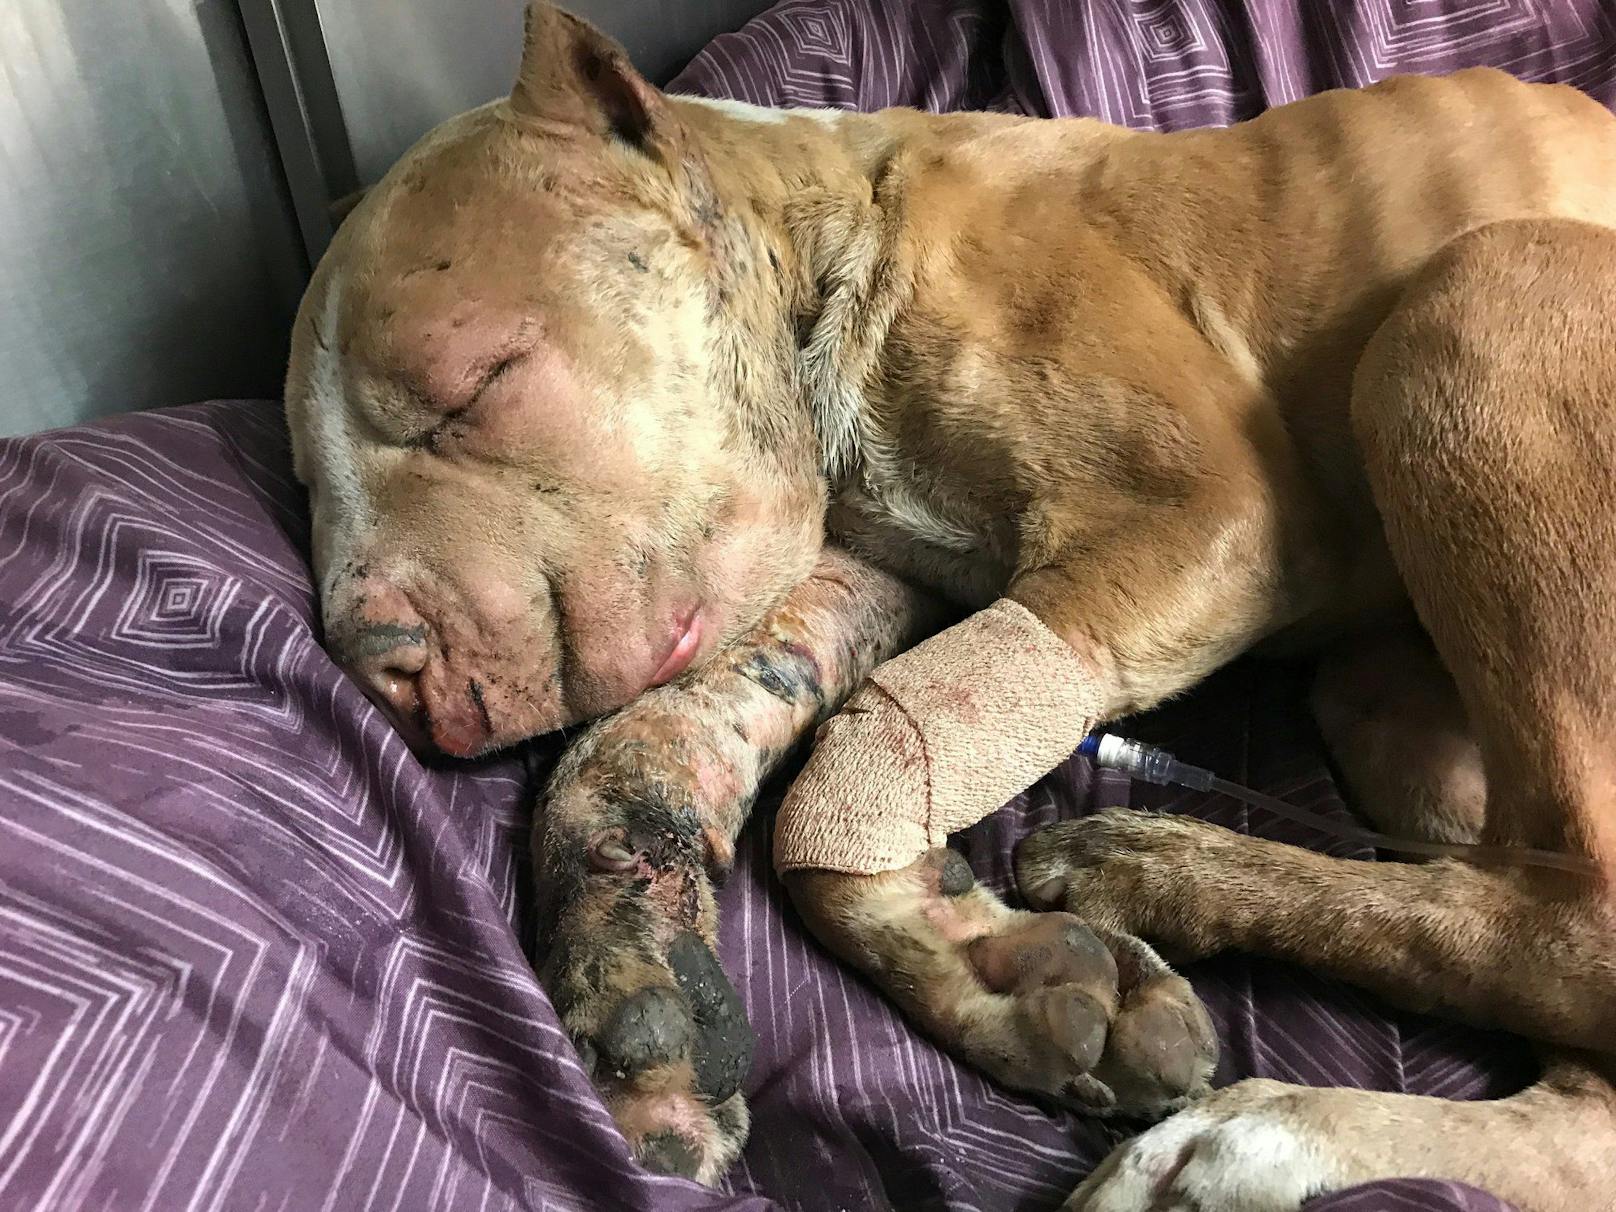 Mitarbeiter der Tierschutzorganisation "Stray Rescue of St. Louis" retteten den armen Kerl und brachten ihn umgehend in die nächste Tierklinik. 